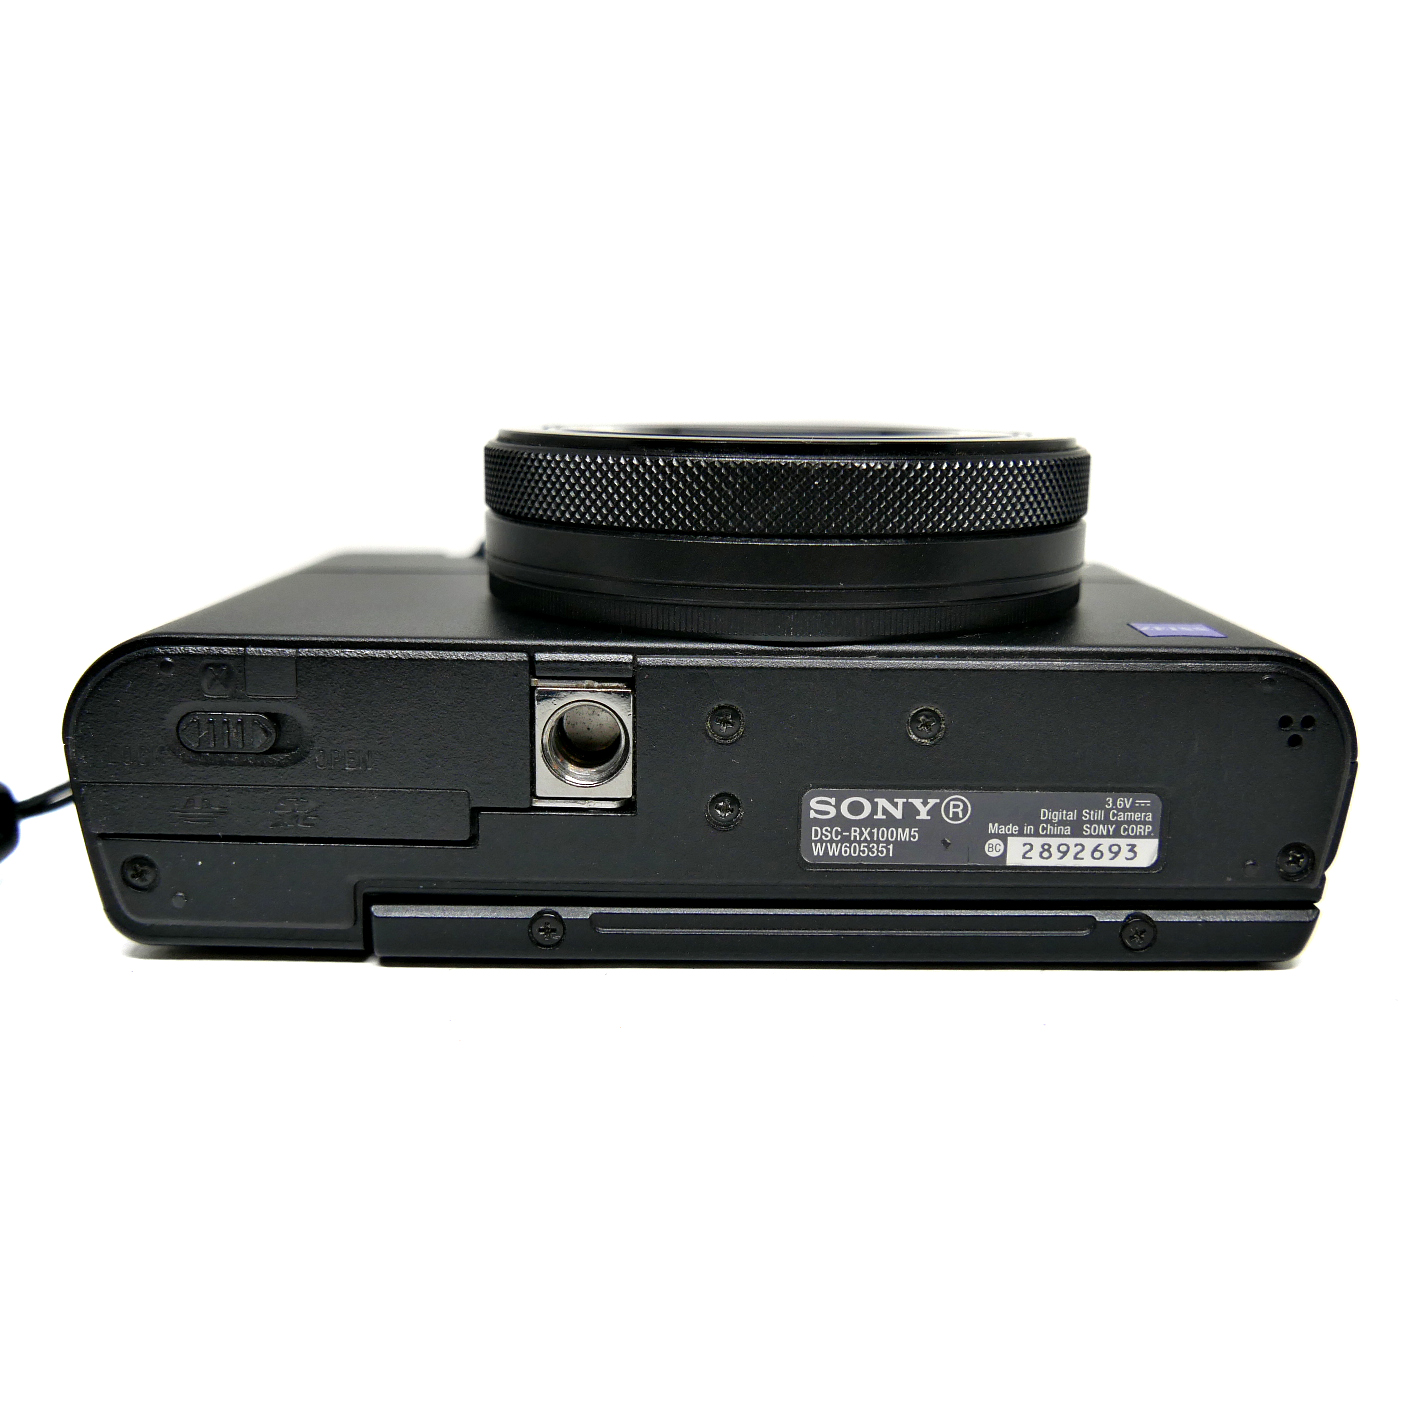 (Myyty) Sony DSC-RX100 Mark V (käytetty)